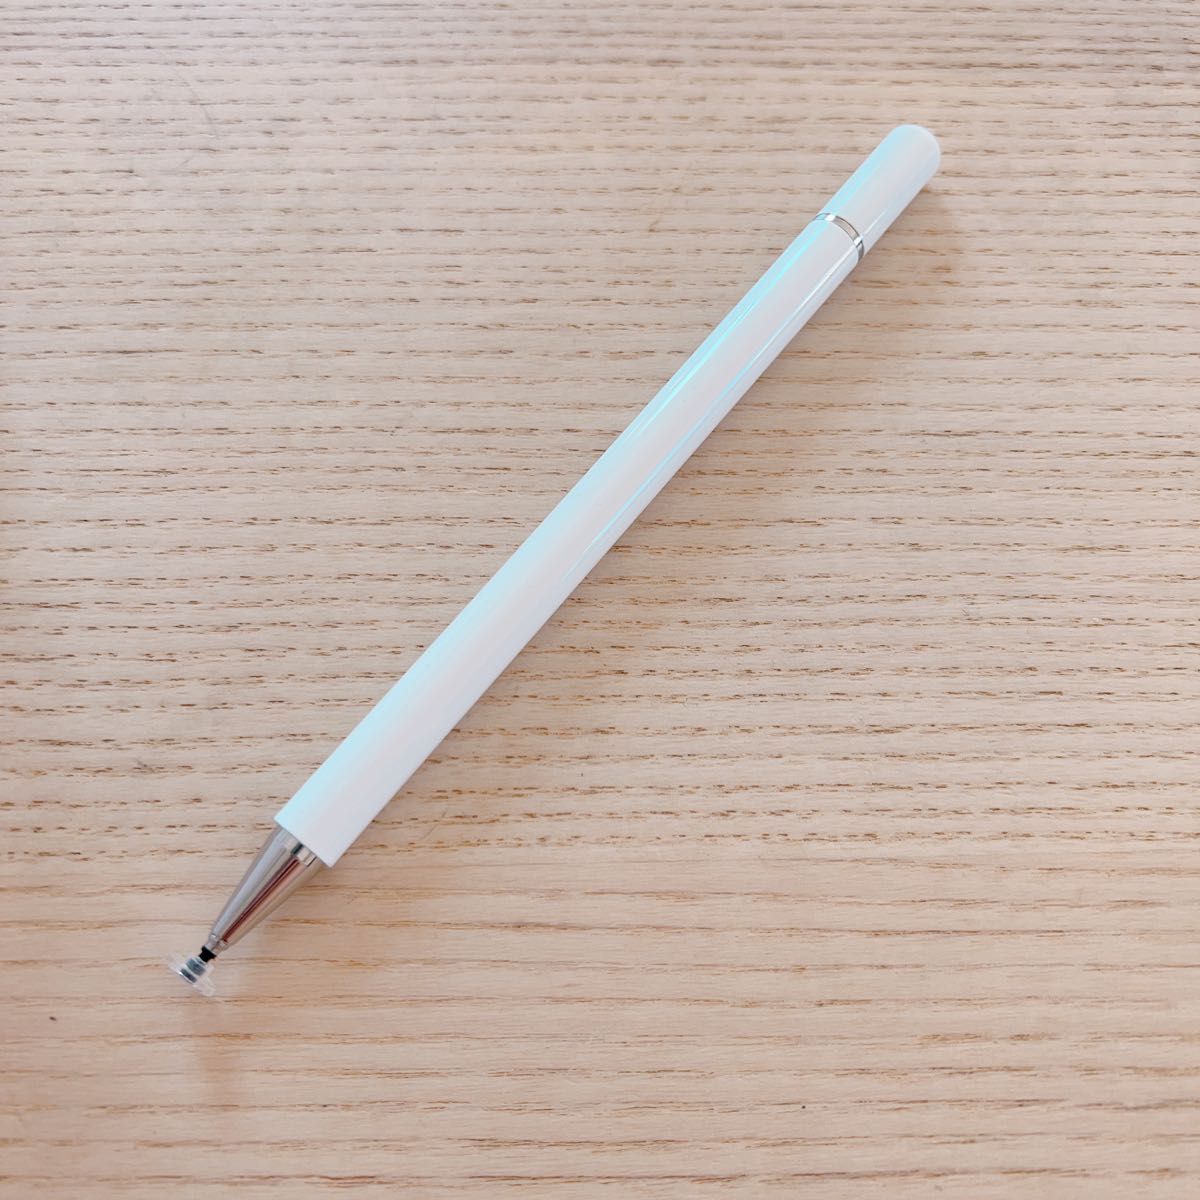 交換用ペンヘッドマカロンカラーグラデーションペイントペン内蔵の磁気スタイラスペン